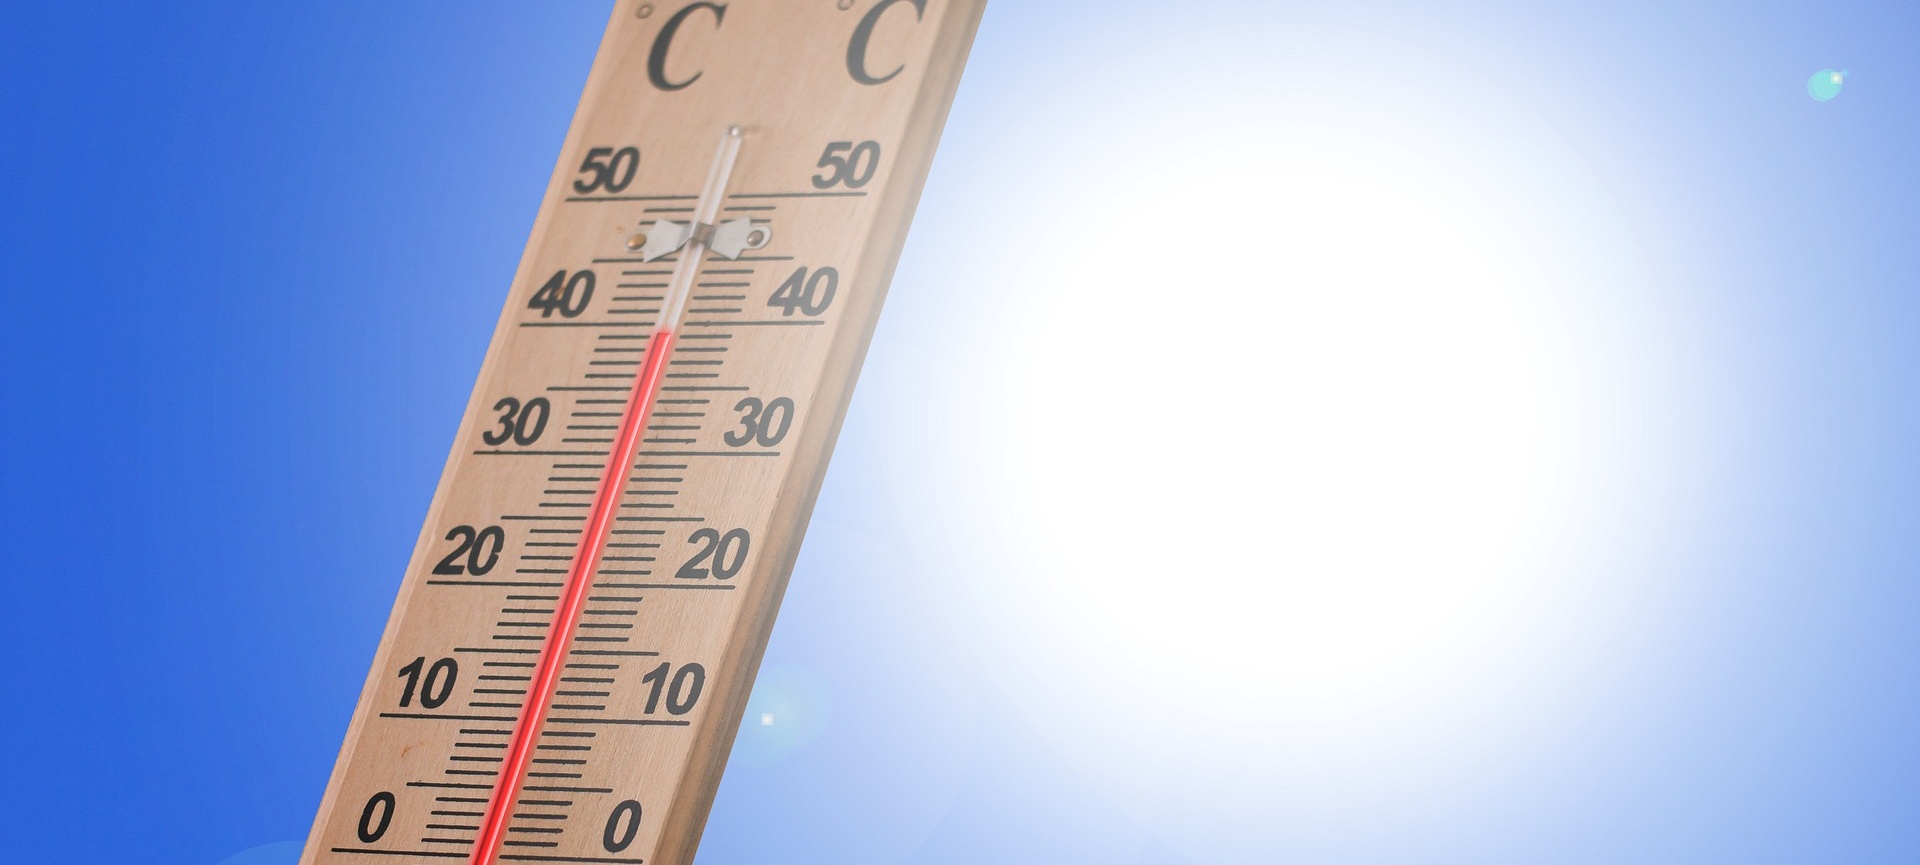 Combattere il calore con i raffrescatori evaporativi domestici